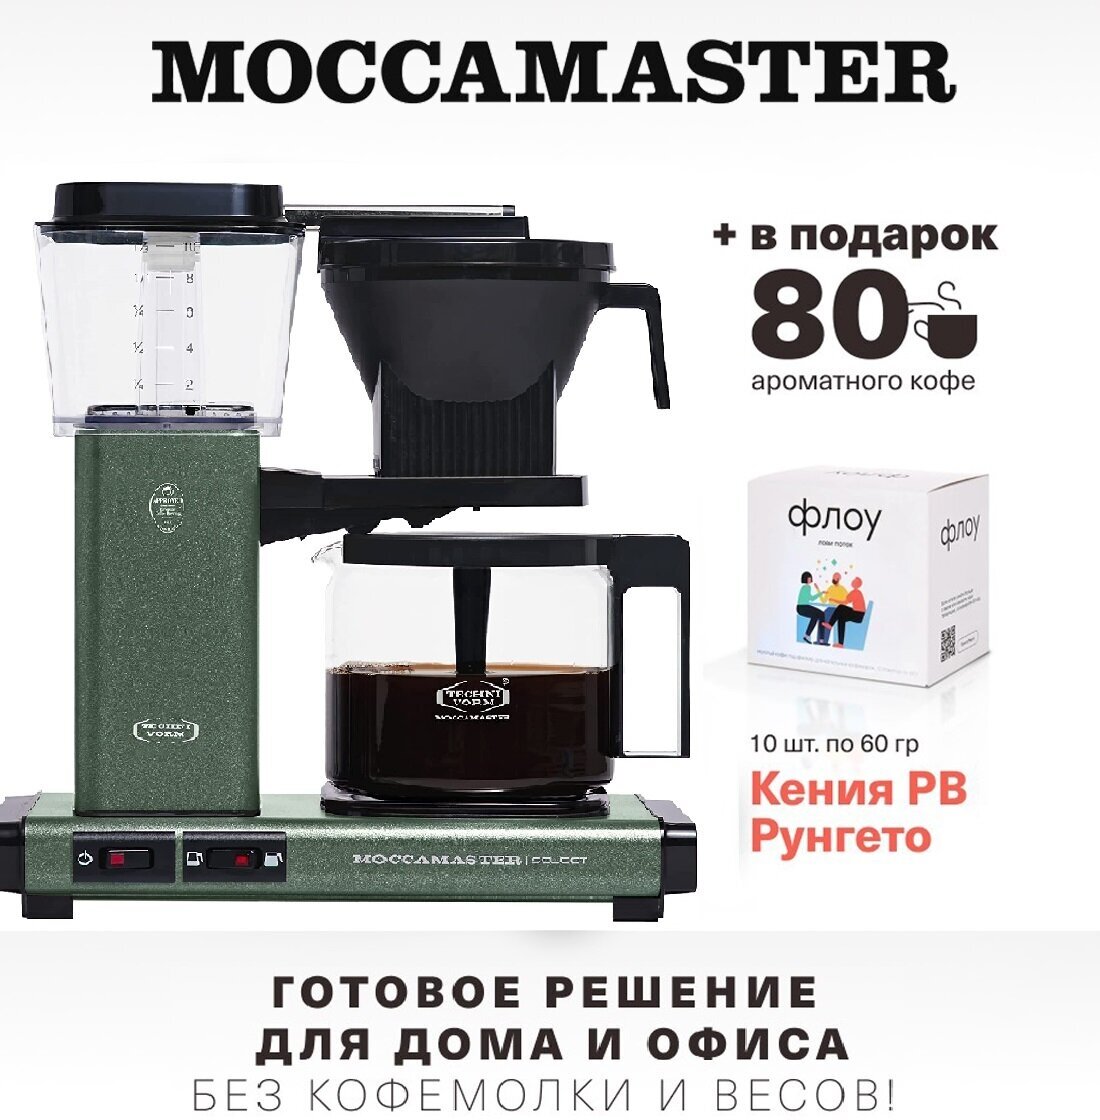 Кофеварка Moccamaster KBG 741 Select, forest green 53991 и упаковка кофе Флоу (10 шт. по 60 гр.) - фотография № 1